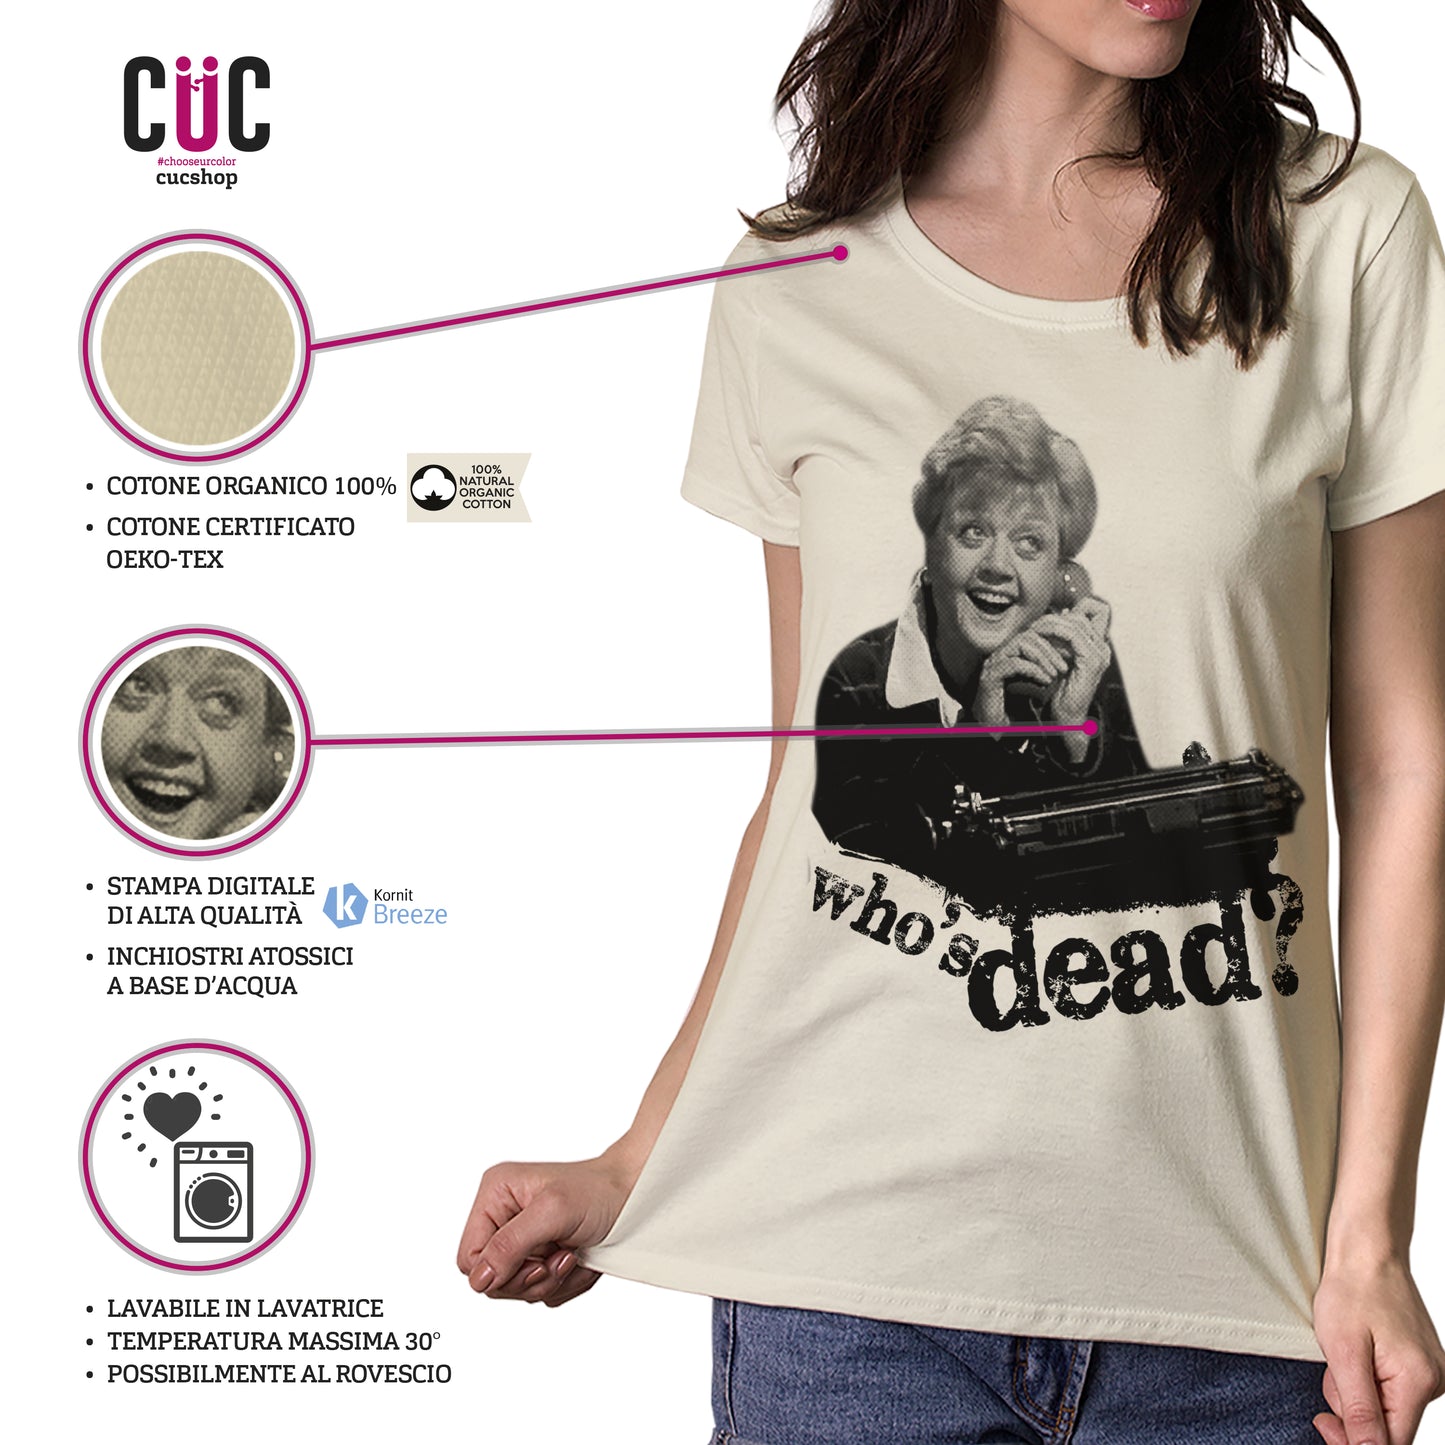 CUC T-Shirt la Signora in Giallo - Jessica Fletcher Who Is Dead? - #chooseurcolor - CUC chooseurcolor